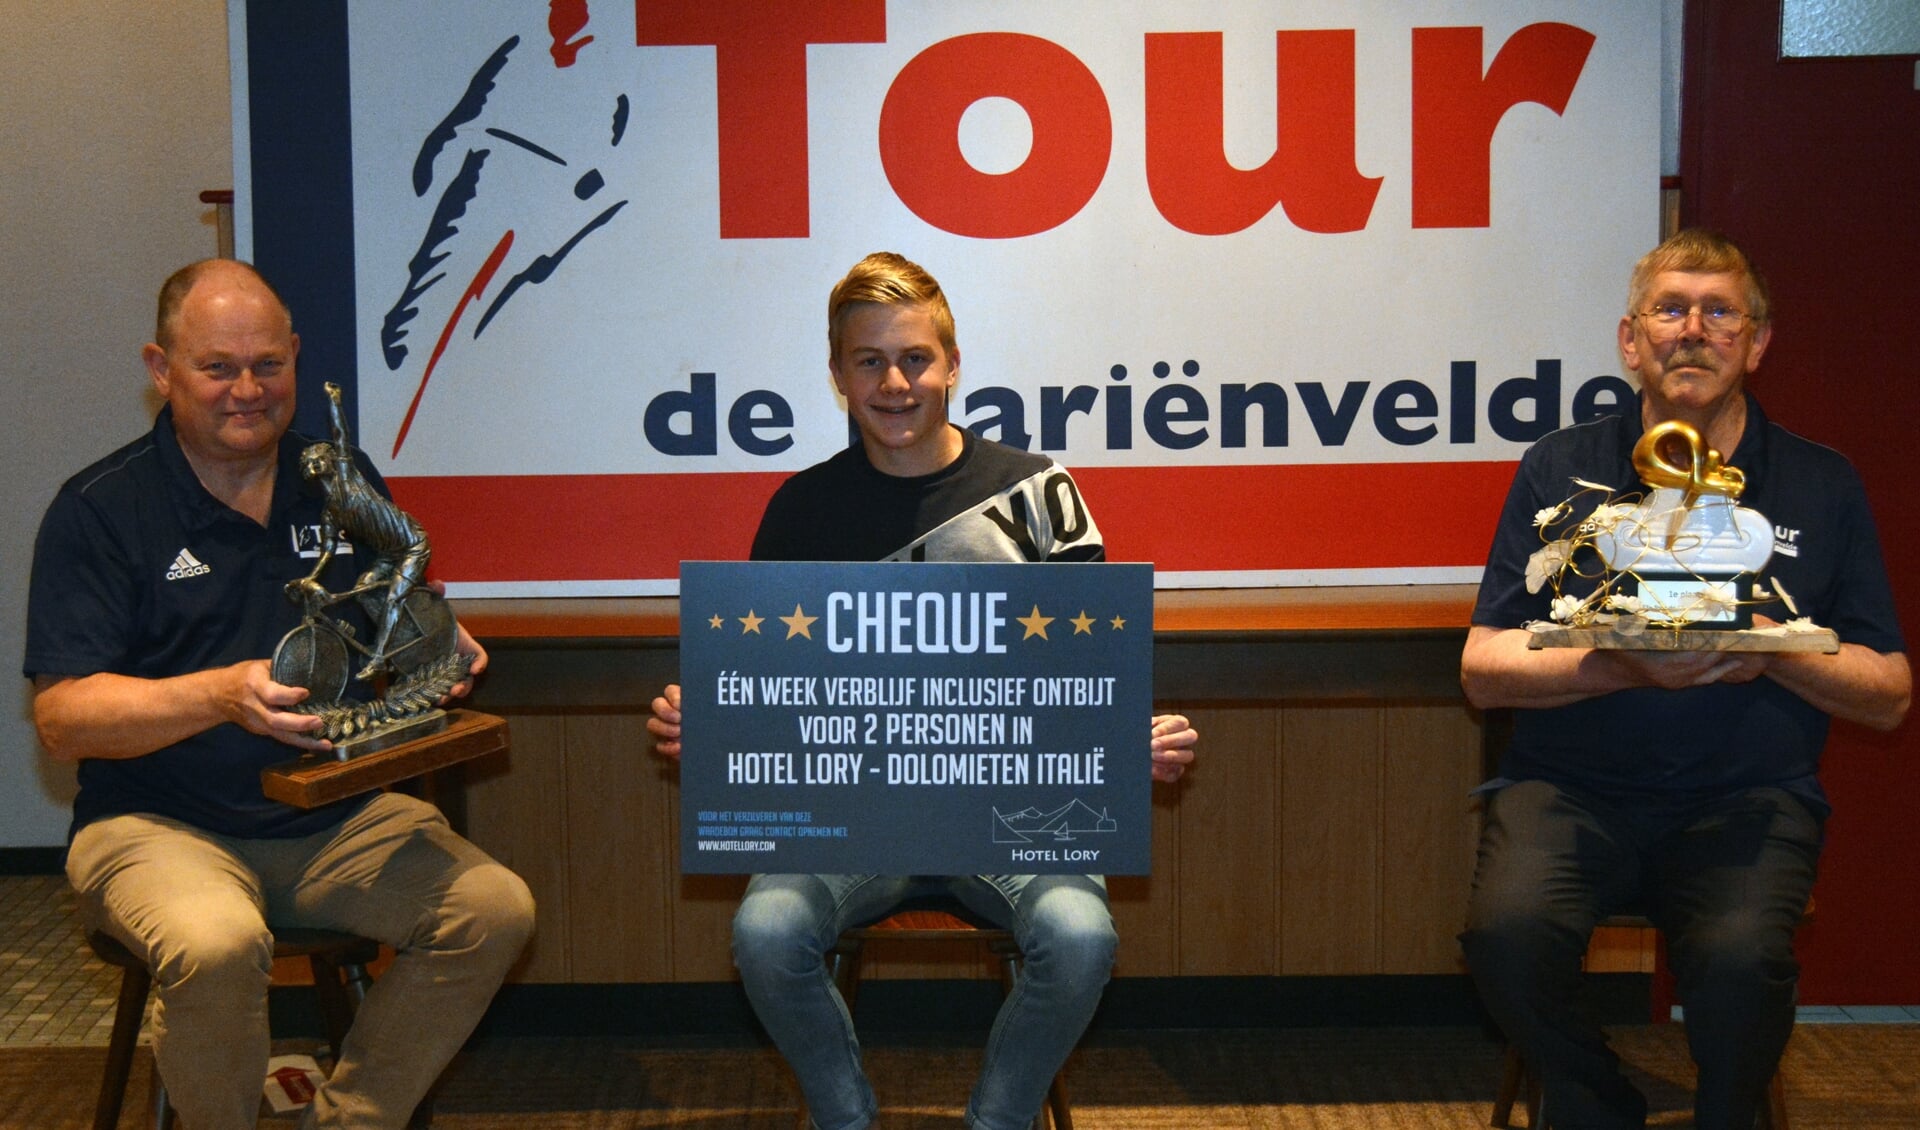 De 16-jarige winnaar Tjibbe de Boer uit Aalten zit met de cheque voor de eerste prijs tussen twee directieleden van de Tour de Marienvelde, Henny Heutinck (rechts) en Henri Weikamp (links). Foto: PR